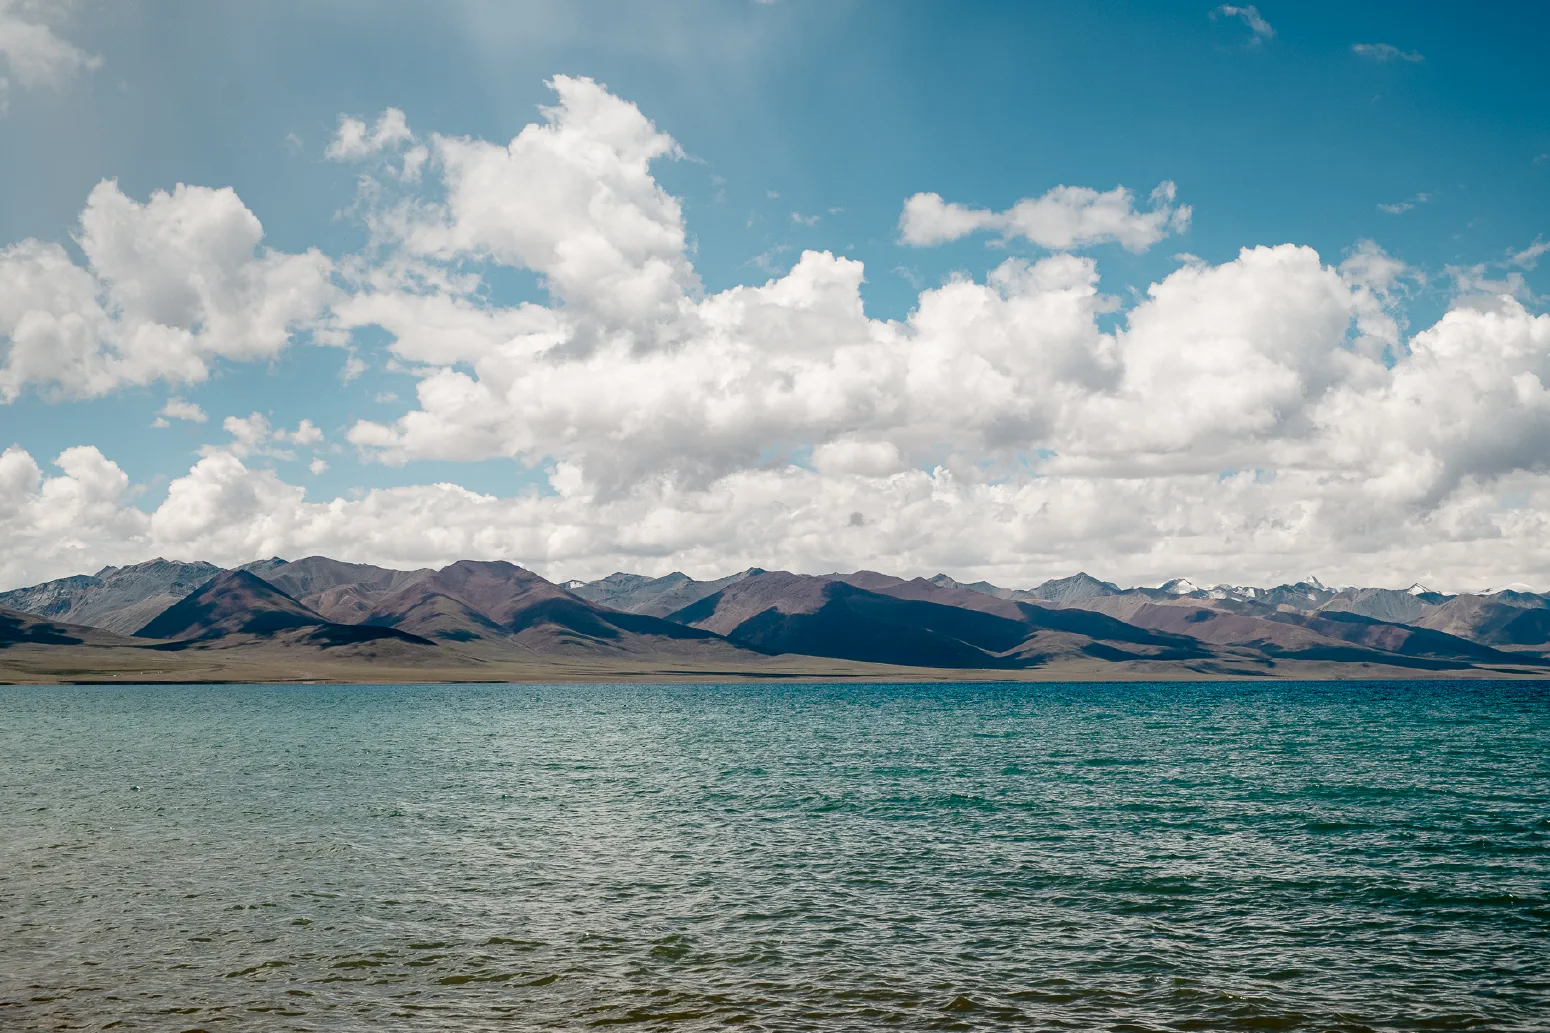 Lake Namtso